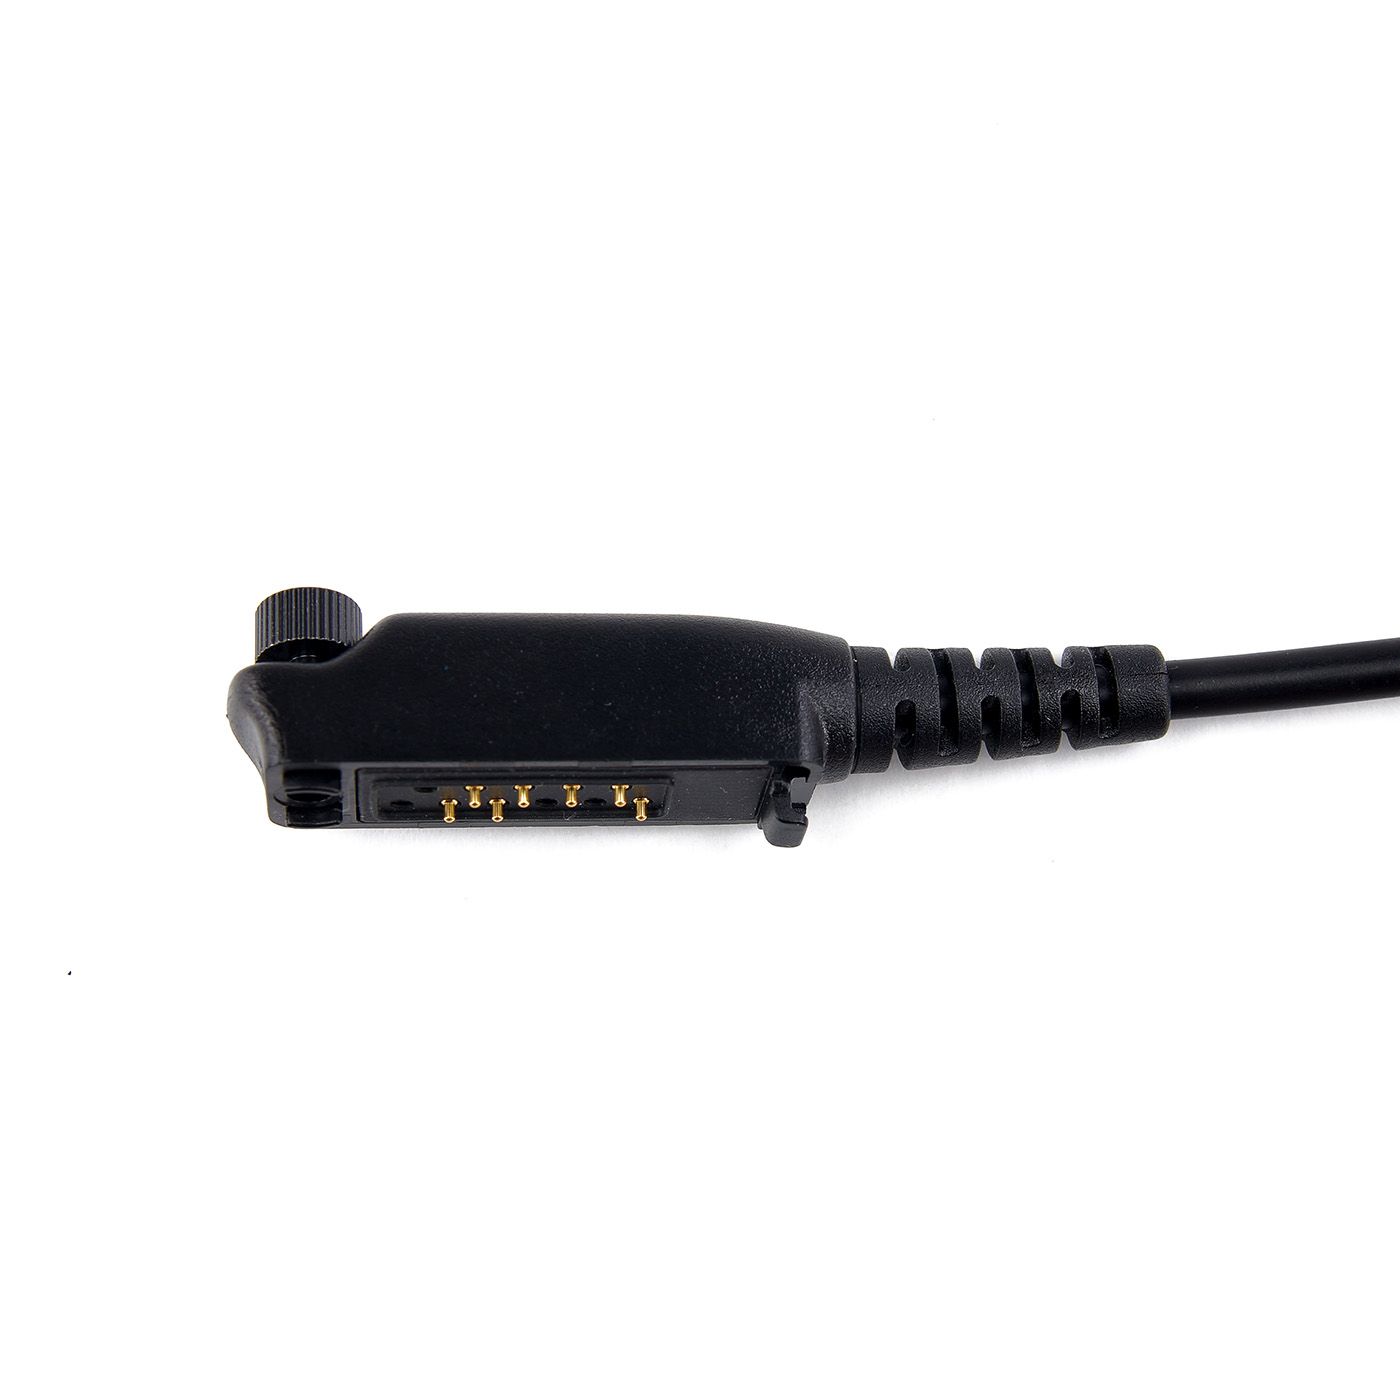 Lautsprecher-Mikrofon mit 3 Funktionstasten, für STP8/9000, SC20, SC21, 37cm Kabel